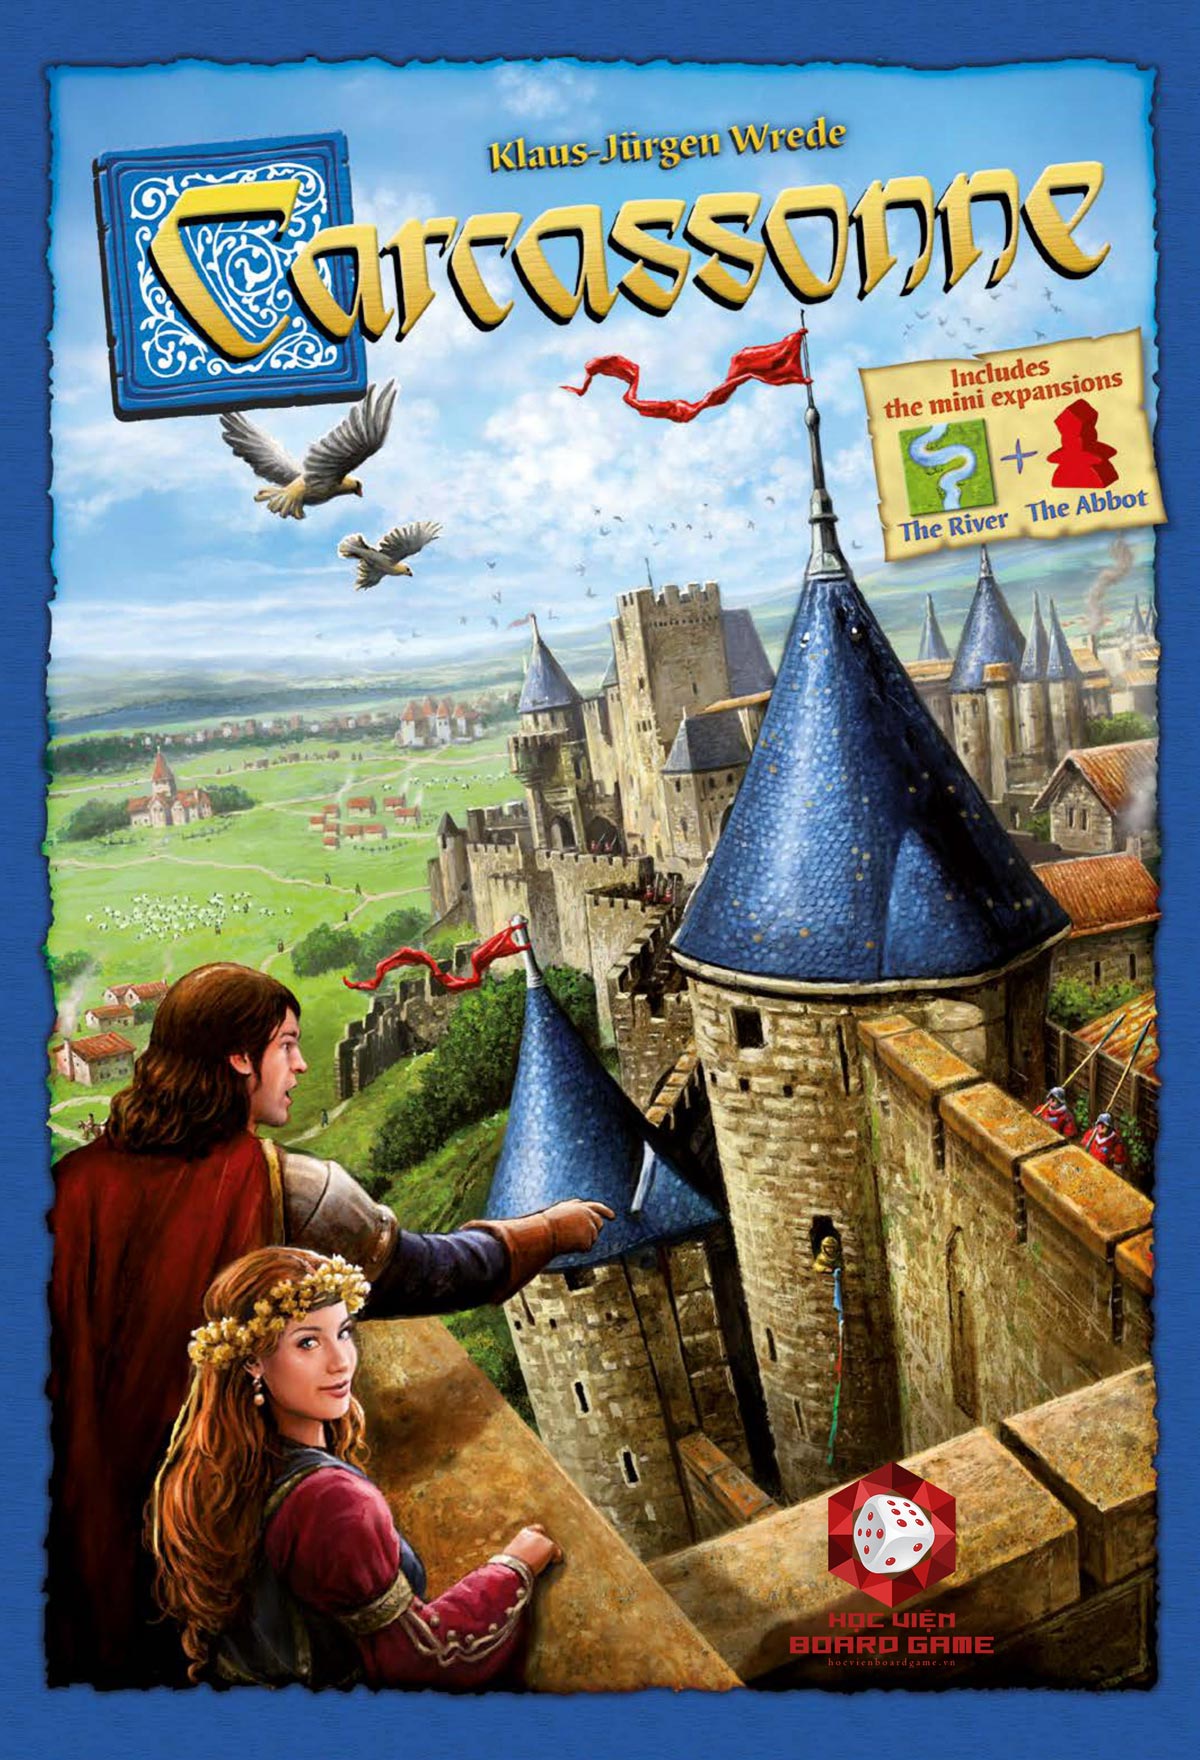 Hướng dẫn luật chơi board game Carcassonne chi tiết nhất.